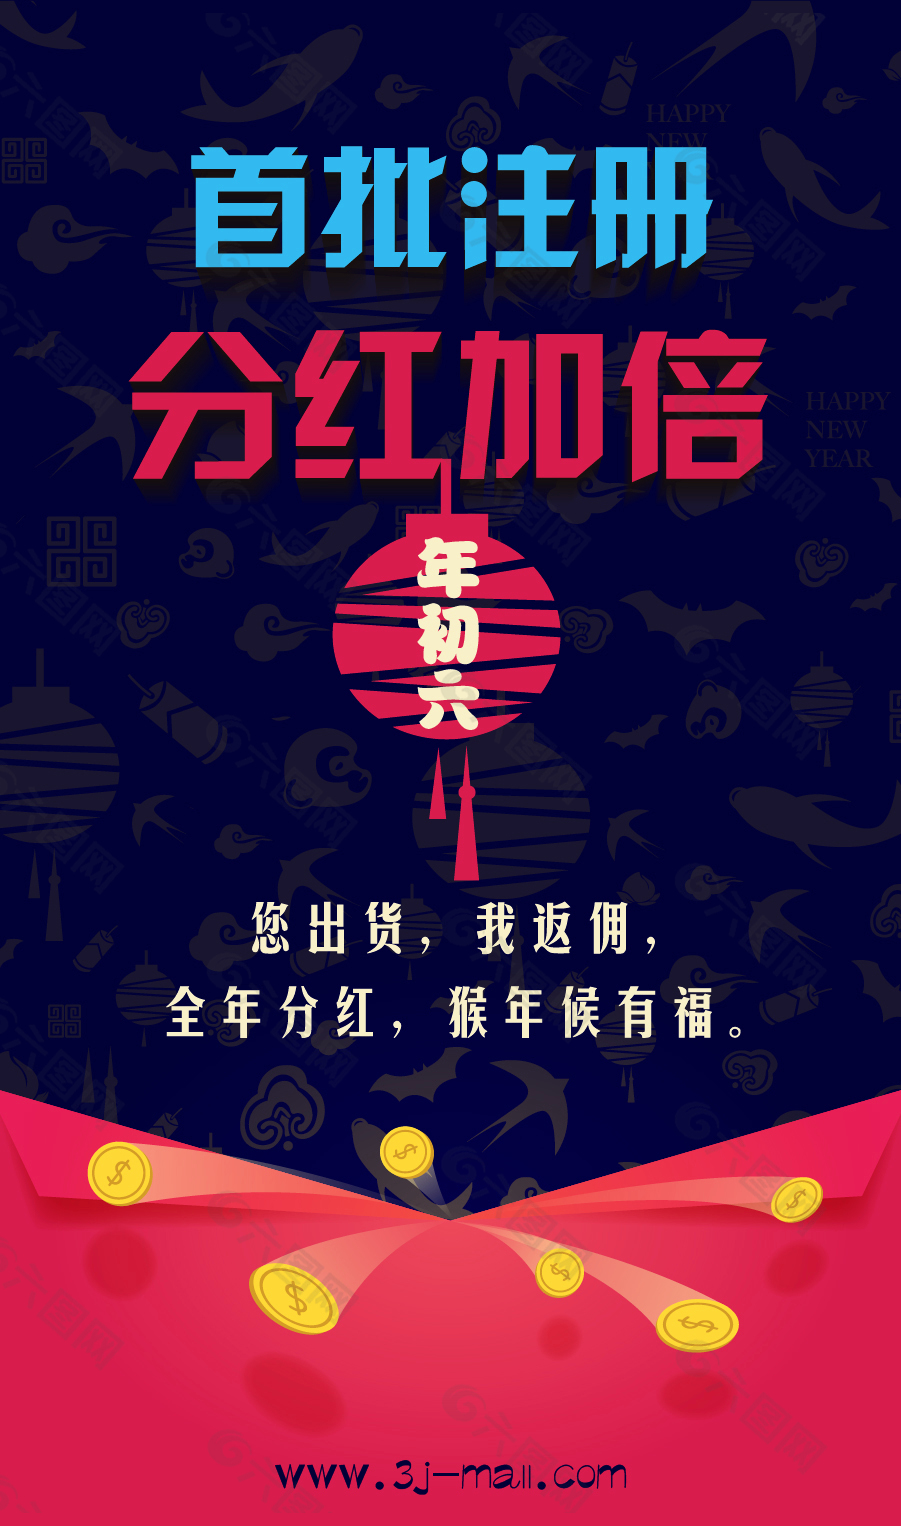 久茂三脚猫物流 新年春节海报